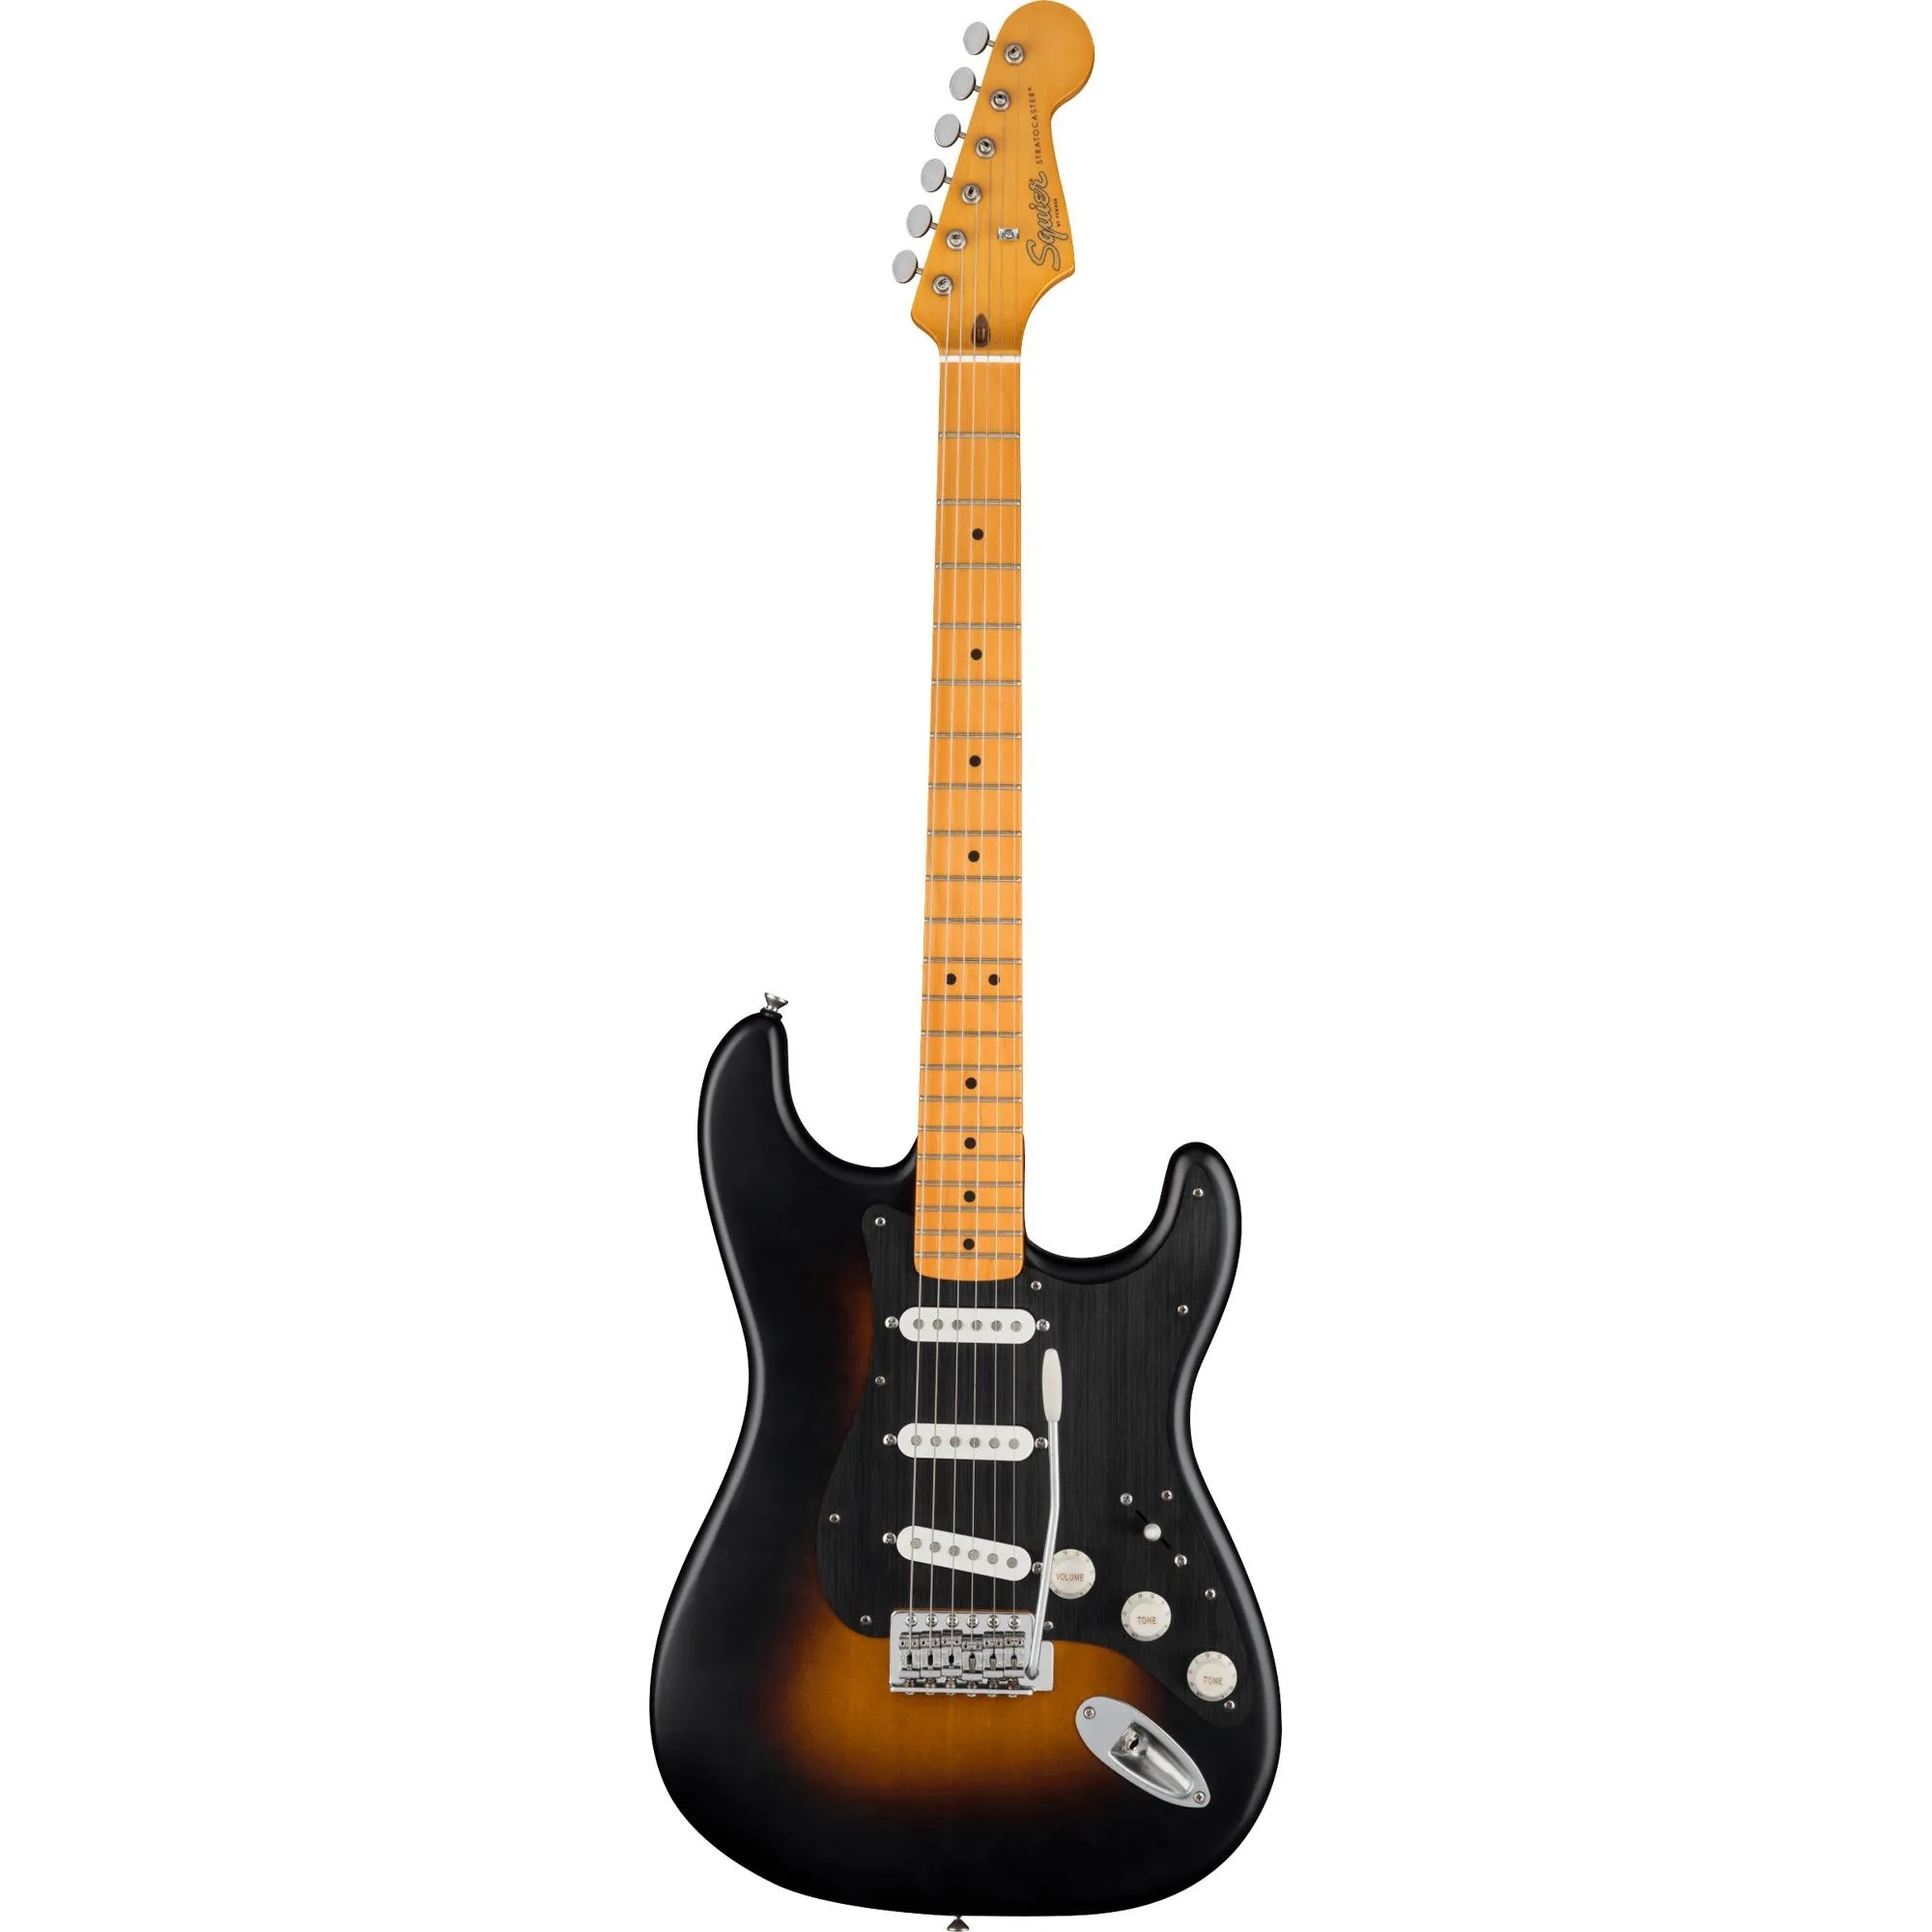 Guitarra Squier 40th Anniversary Stratocaster Satin Wide Sunburst por 4.299,99 à vista no boleto/pix ou parcele em até 12x sem juros. Compre na loja Mundomax!